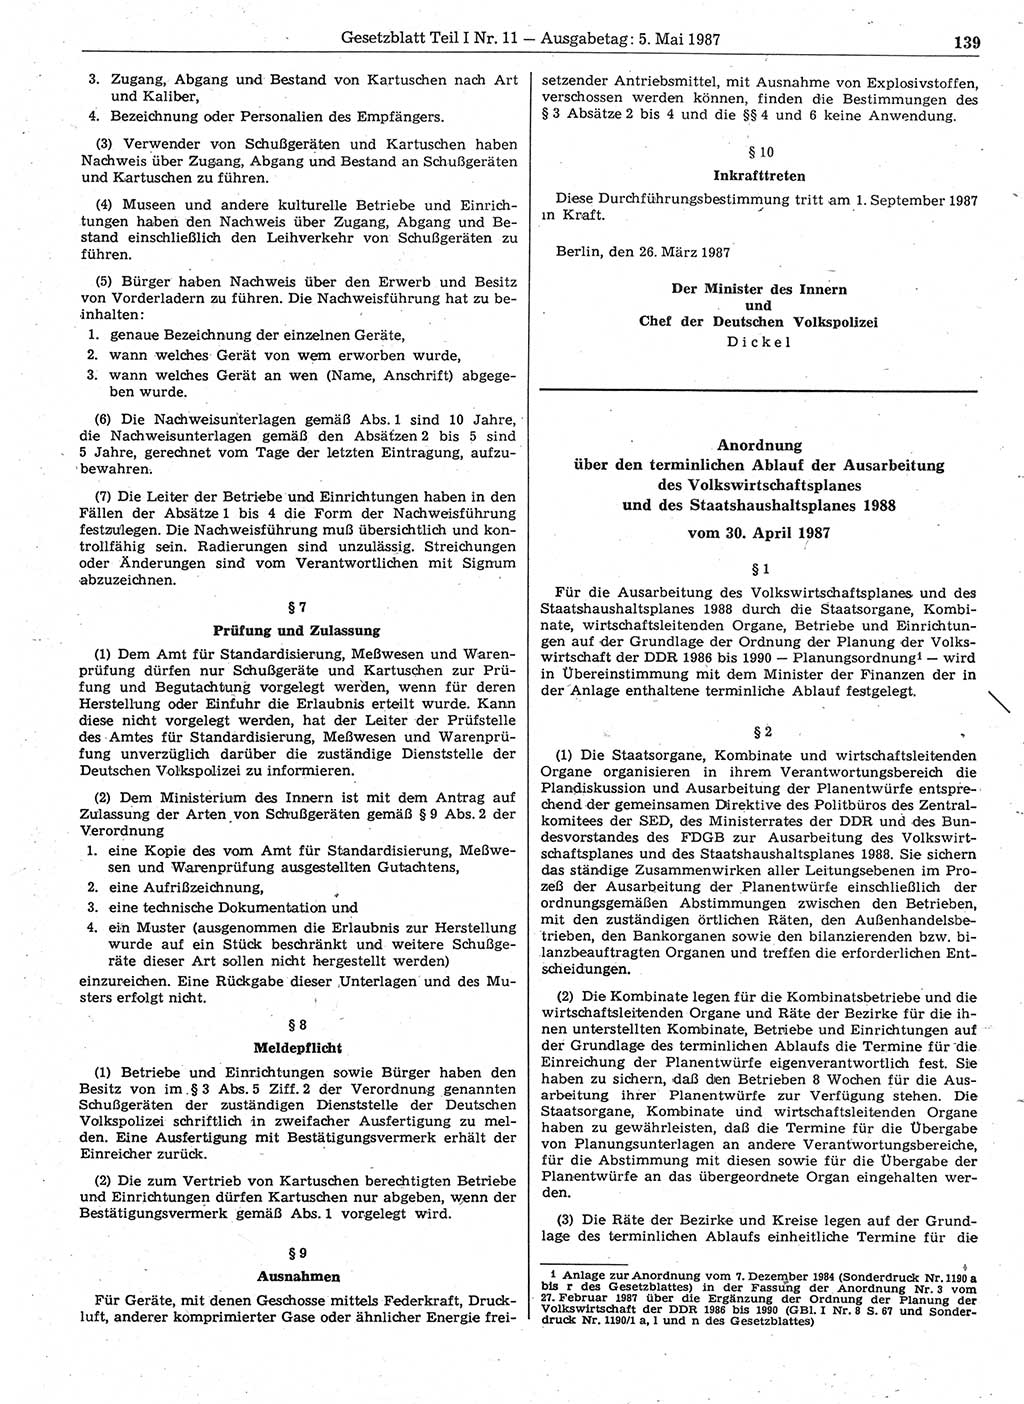 Gesetzblatt (GBl.) der Deutschen Demokratischen Republik (DDR) Teil Ⅰ 1987, Seite 139 (GBl. DDR Ⅰ 1987, S. 139)